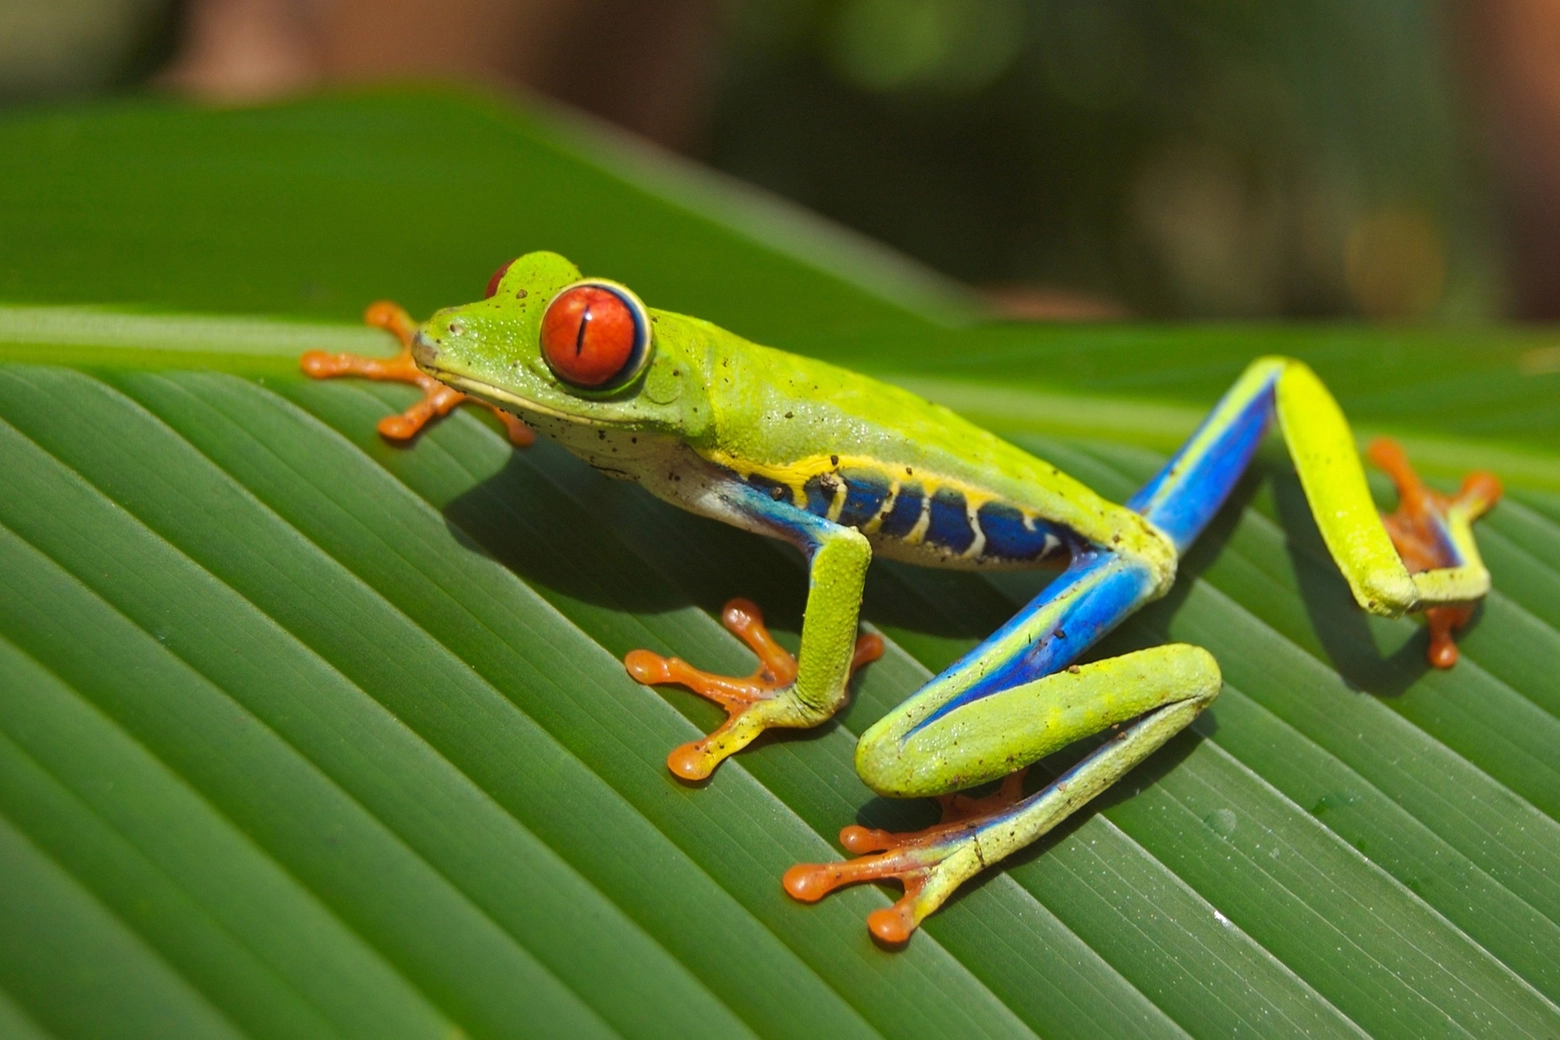 A seconda dell'habitat le rane, diffuse in tutto il mondo, assumono colorazioni diverse per adattarsi all'ambiente